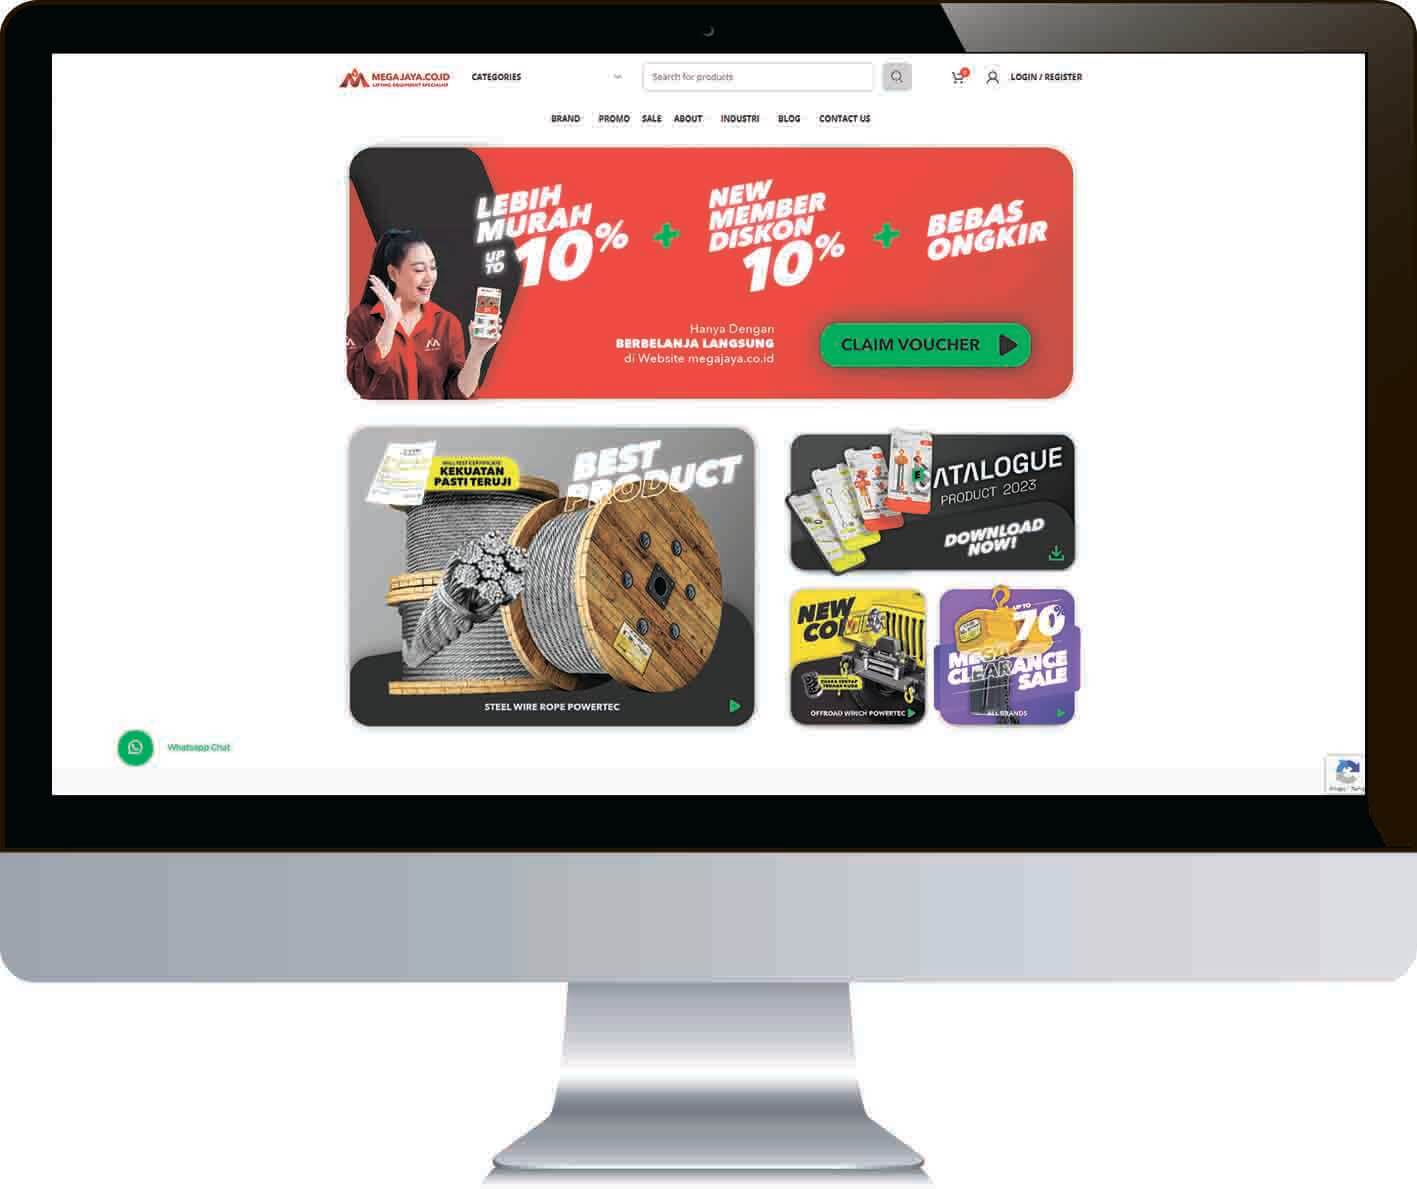 Langkah 1: Tata Cara Pembelian di Website Mega Jaya